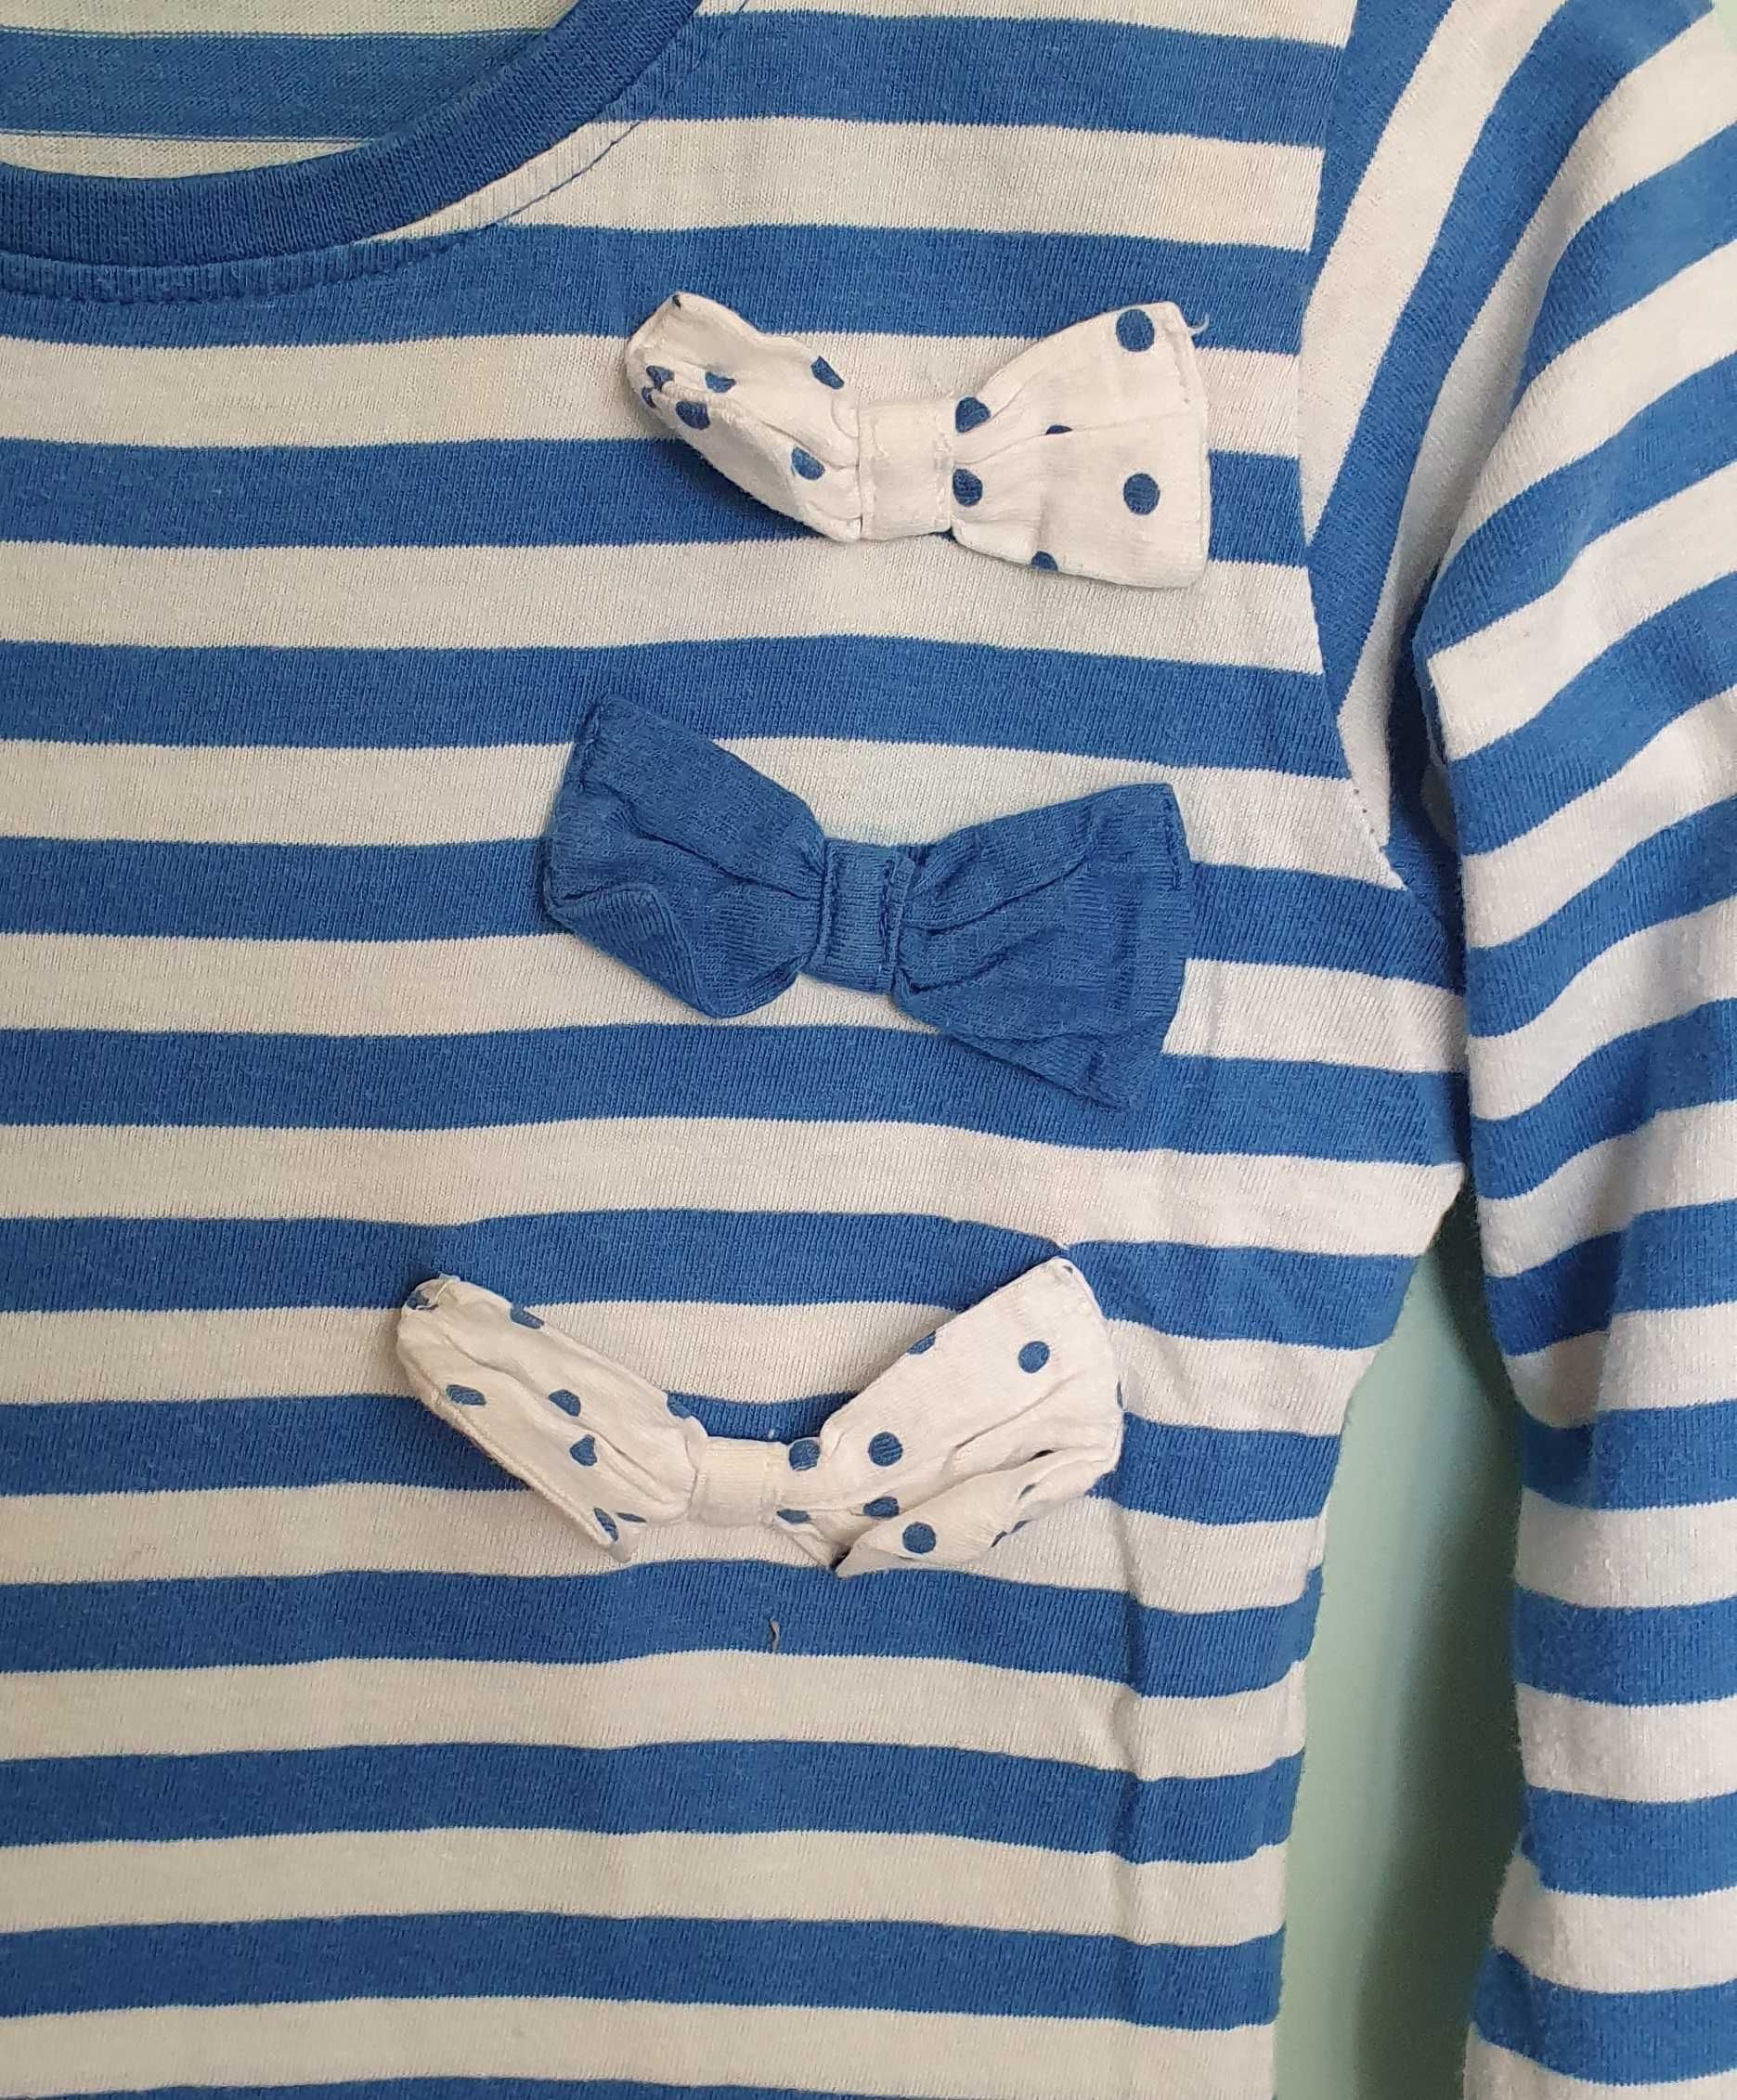 Bluzka Pepco, bluza, rozmiar 116 cm (5 - 6 lat), dziewczęca w paski.